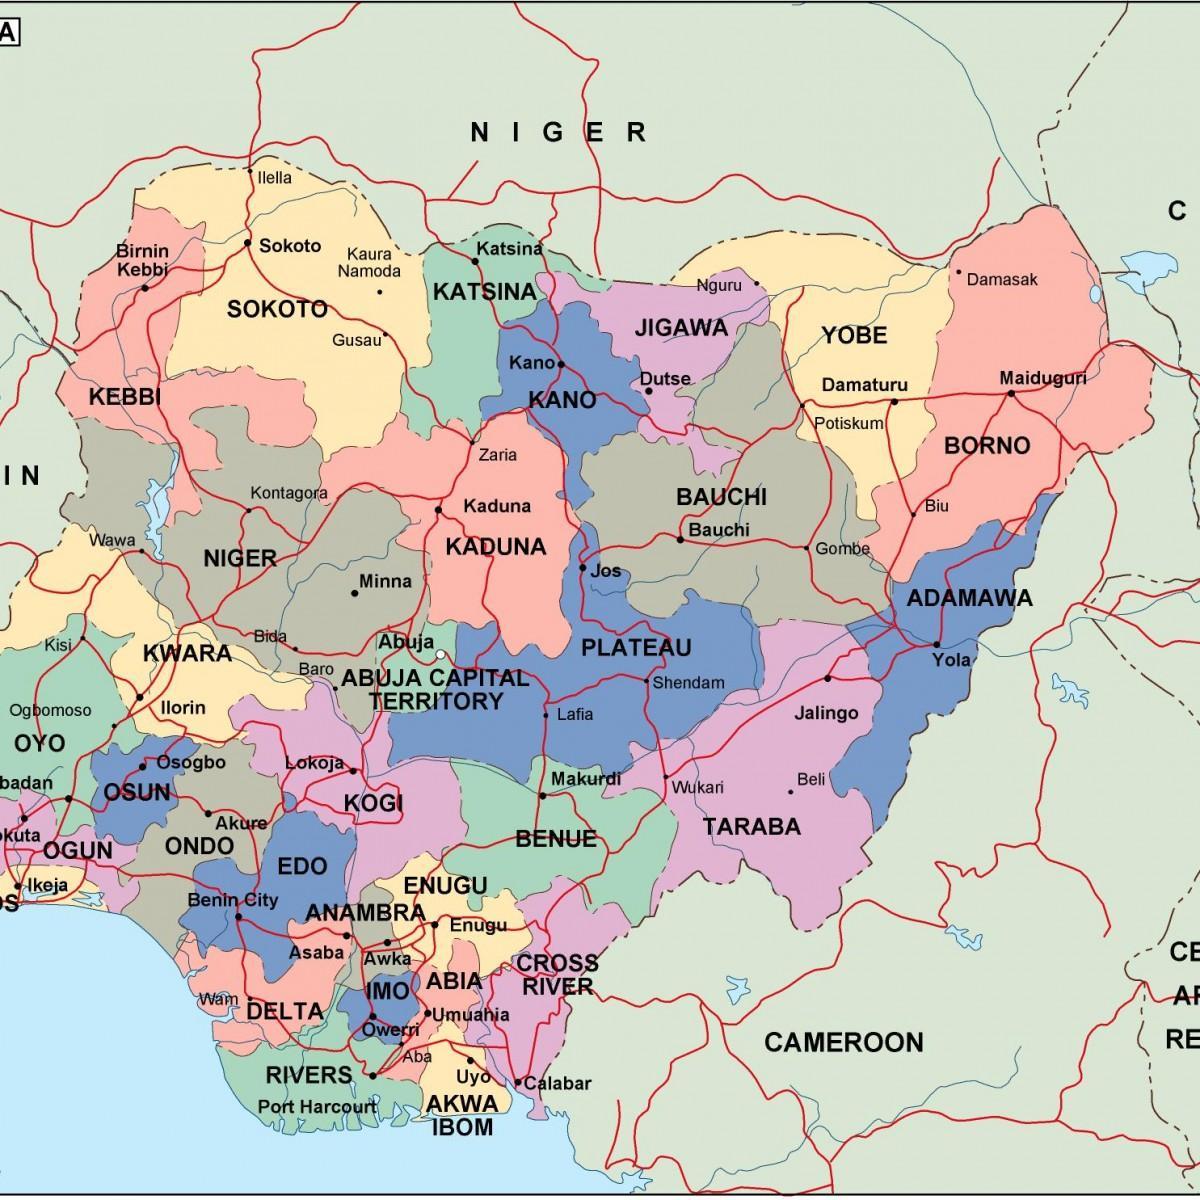 Harta e nigeria me shtetet dhe qytetet